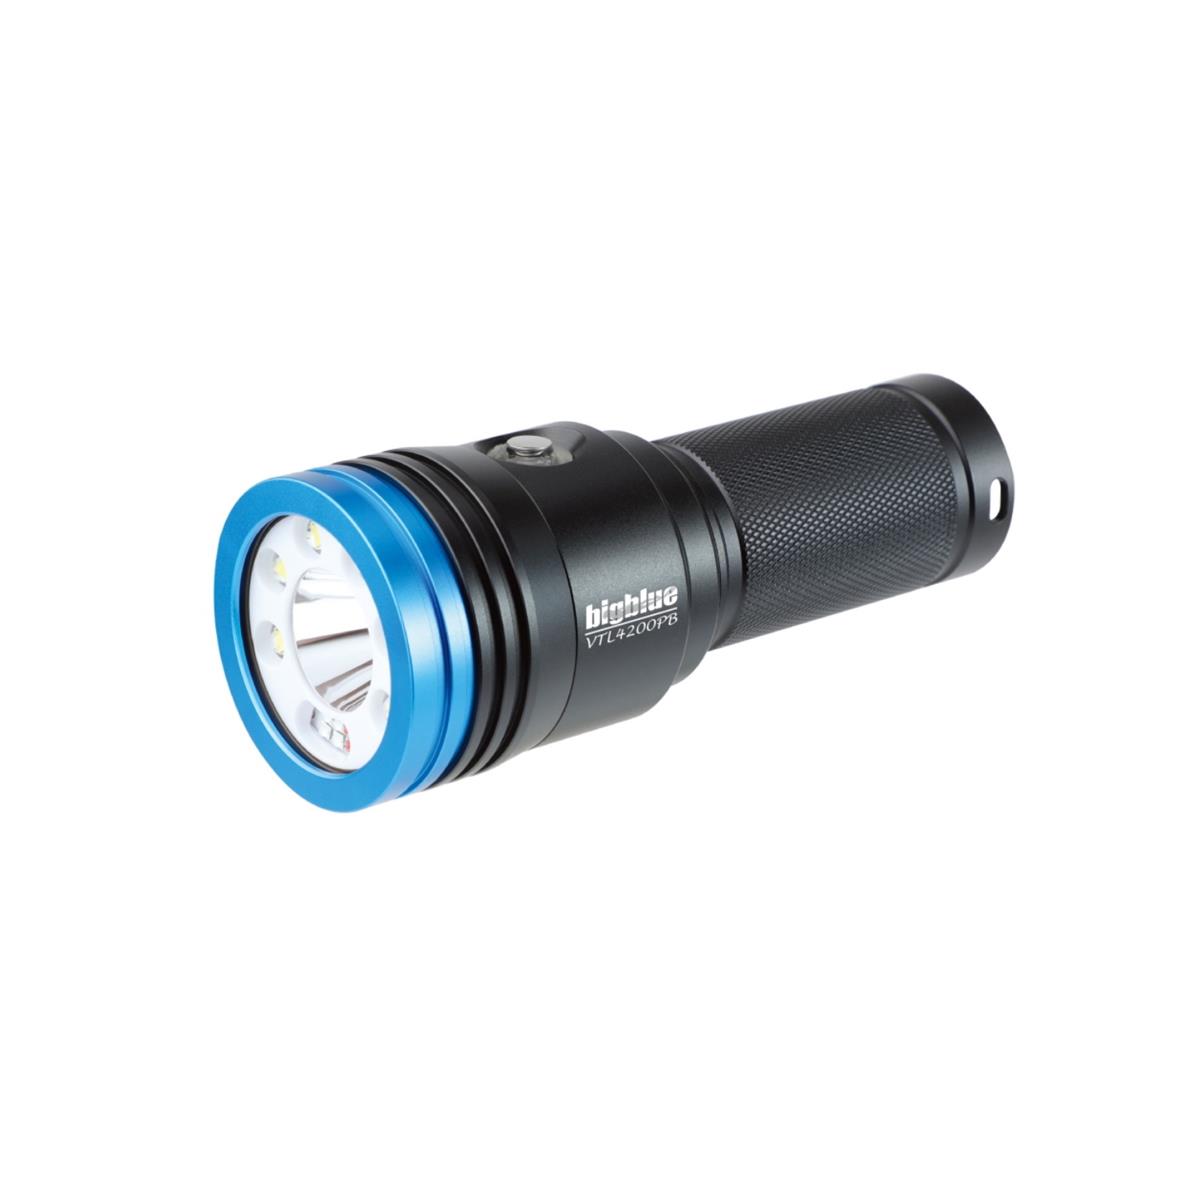 VTL4200PB Tauch- und Unterwasser-Videolampe